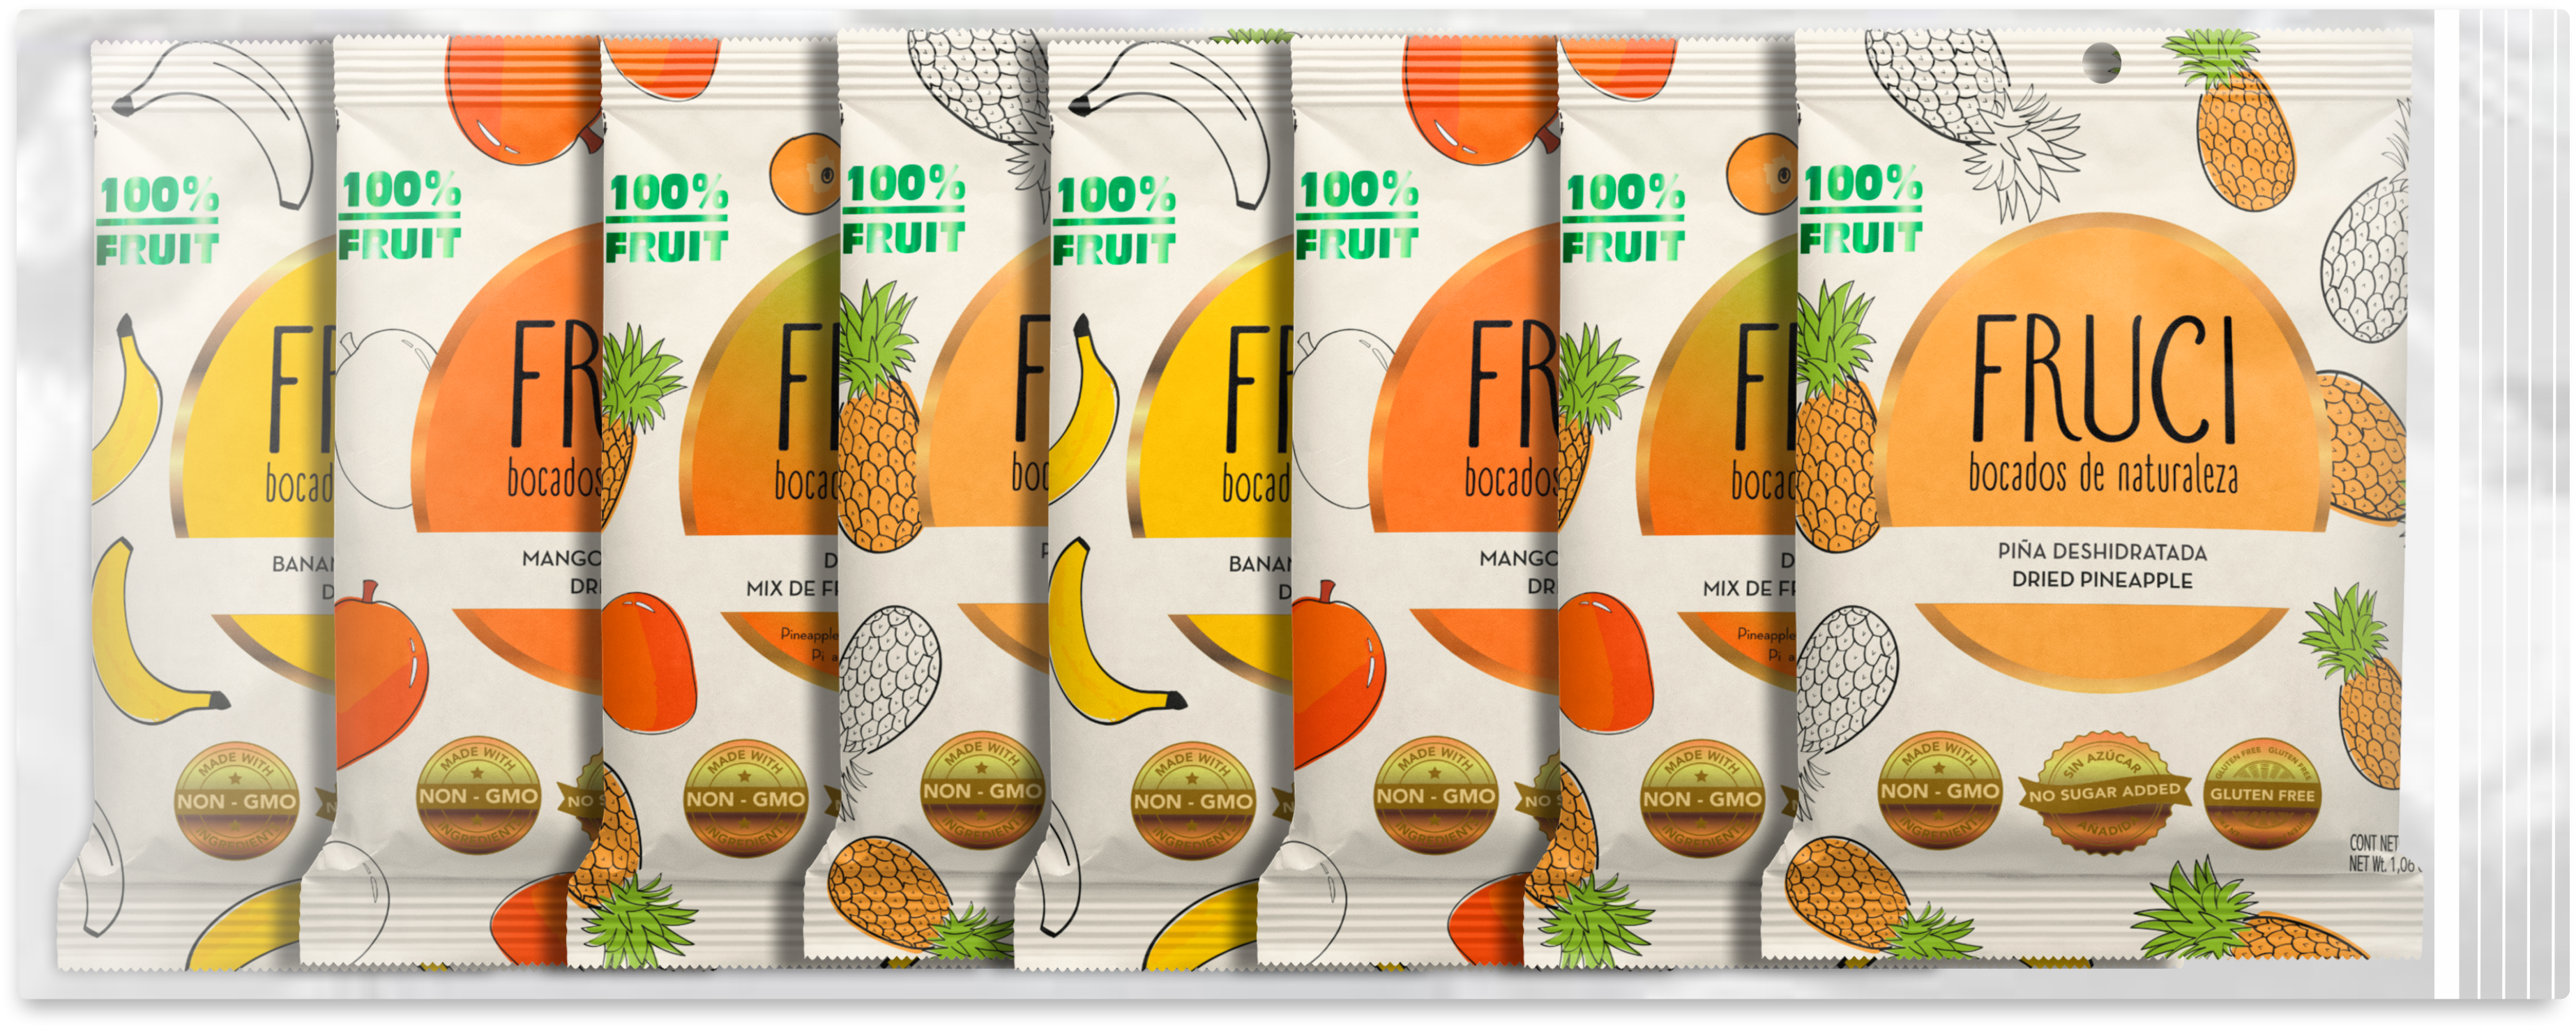 Fruci100% Surtidas Pack x 8 unidades 30g (Fruta deshidratada: Banano, –  INNOVA FOODS CO